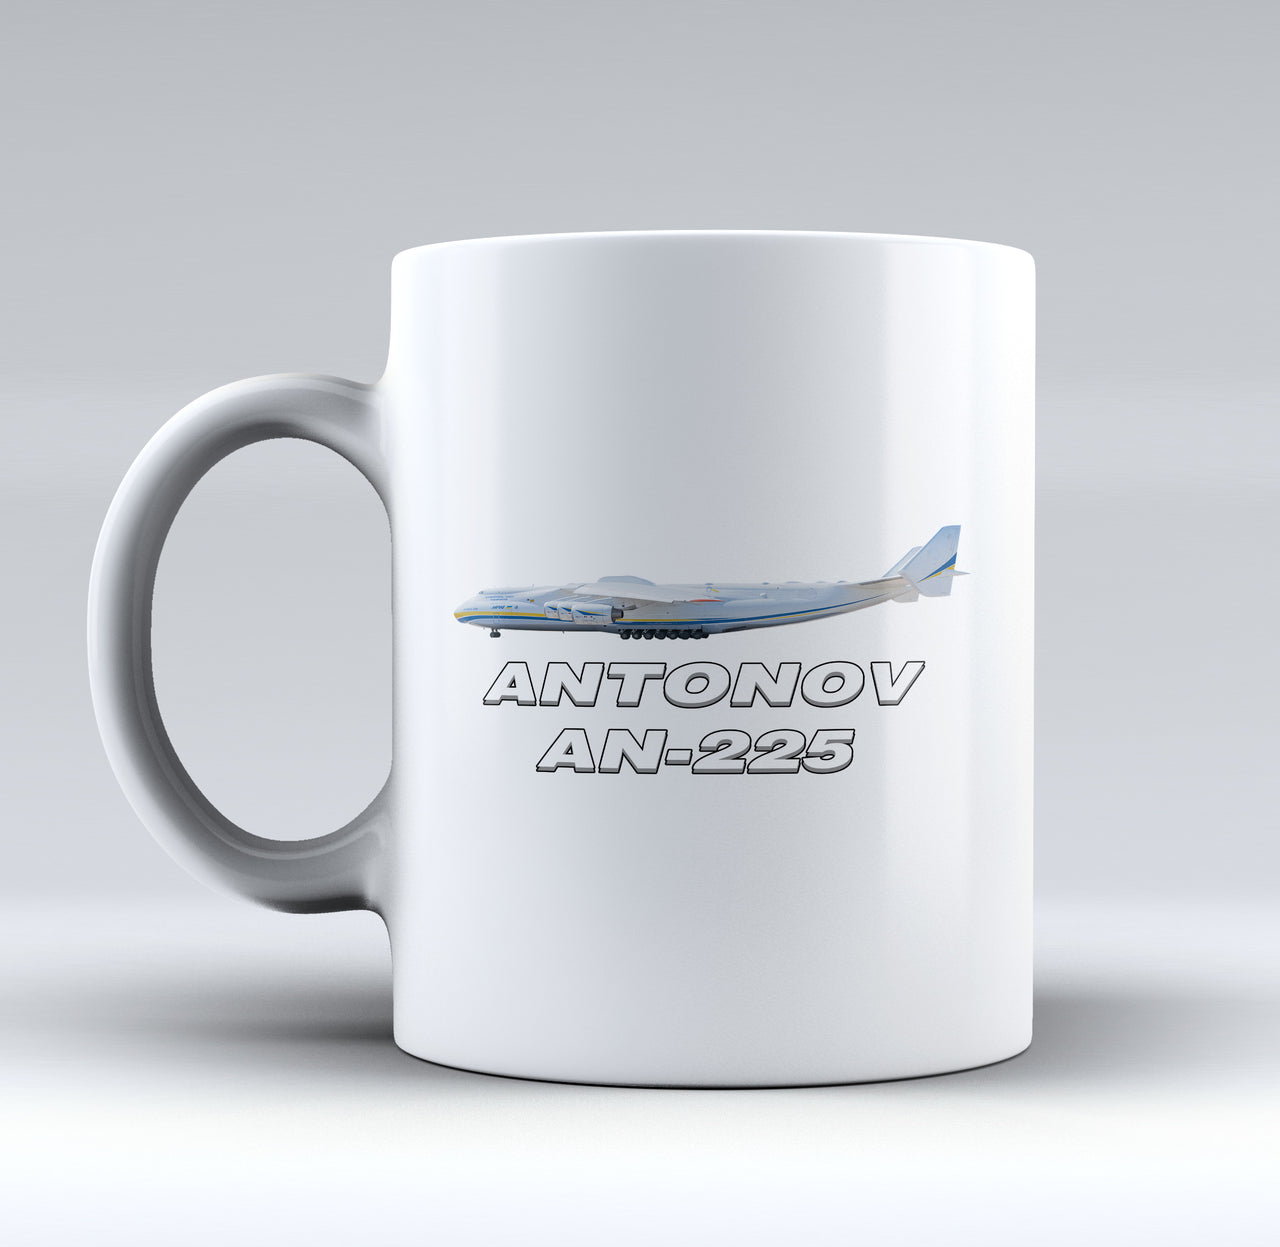 The Antonov AN-225 Designed Mugs